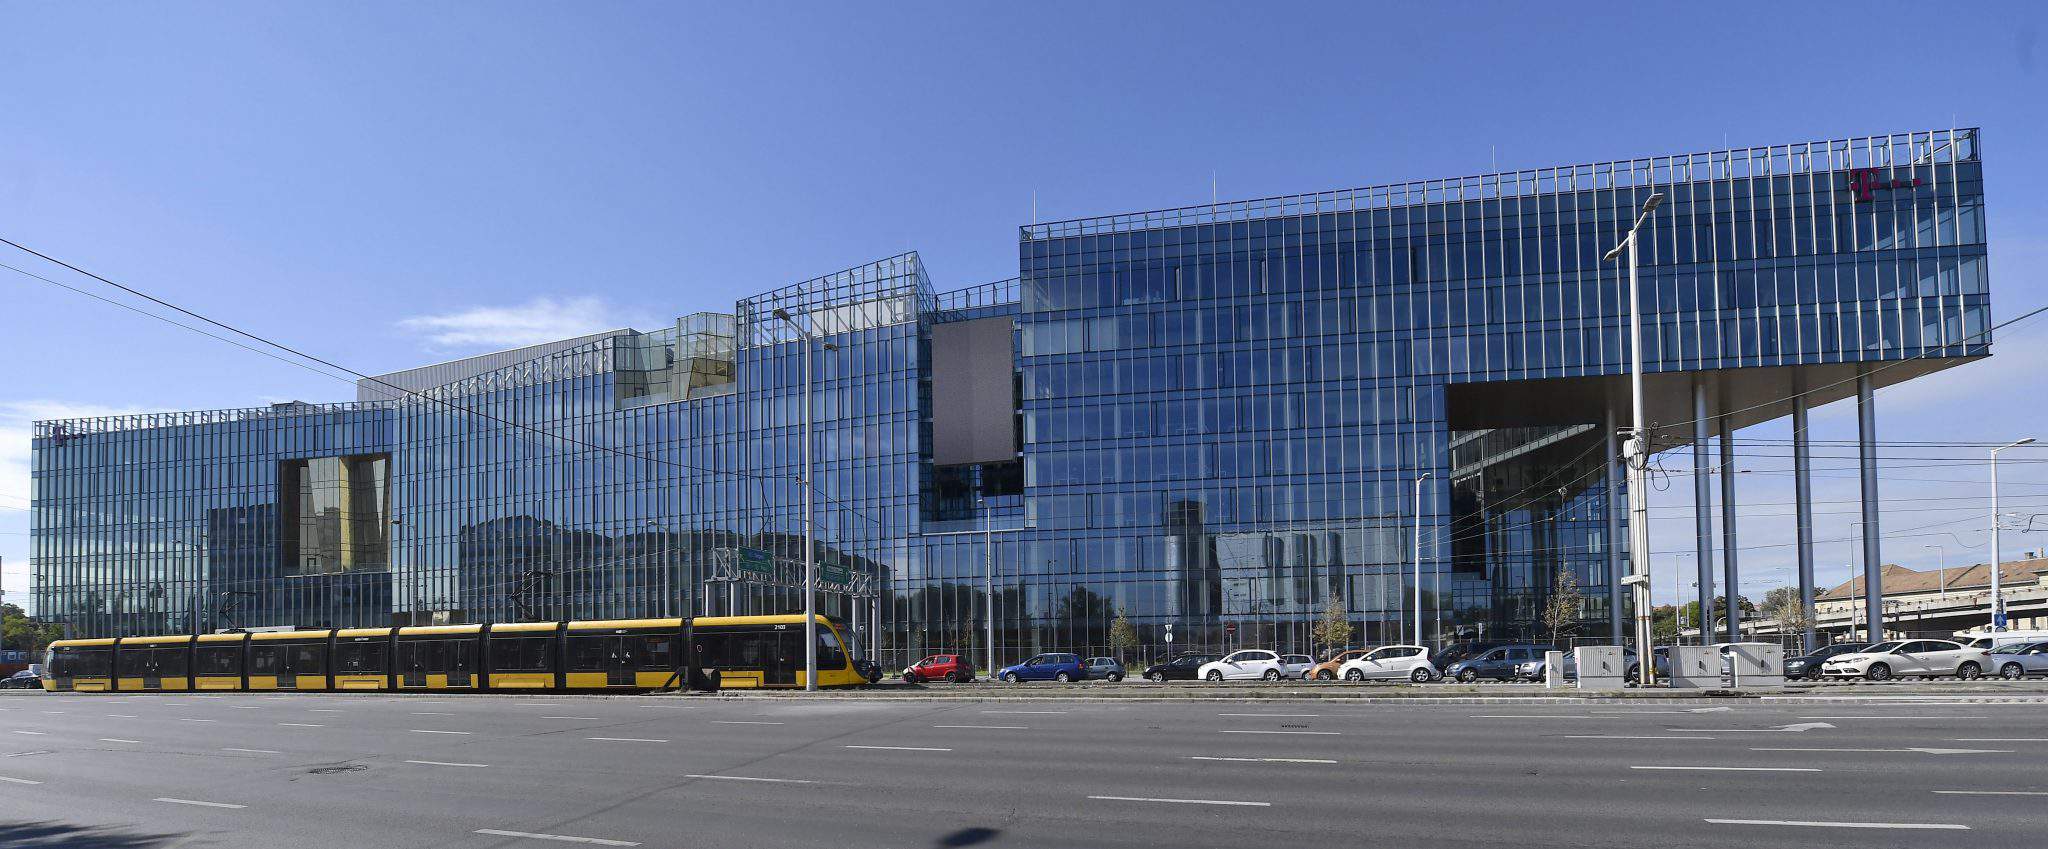 Компанія Wing оголосила про завершення будівництва штаб-квартири Magyar Telekom і T-Systems вартістю 50 мільярдів форинтів (154.5 мільйонів євро).